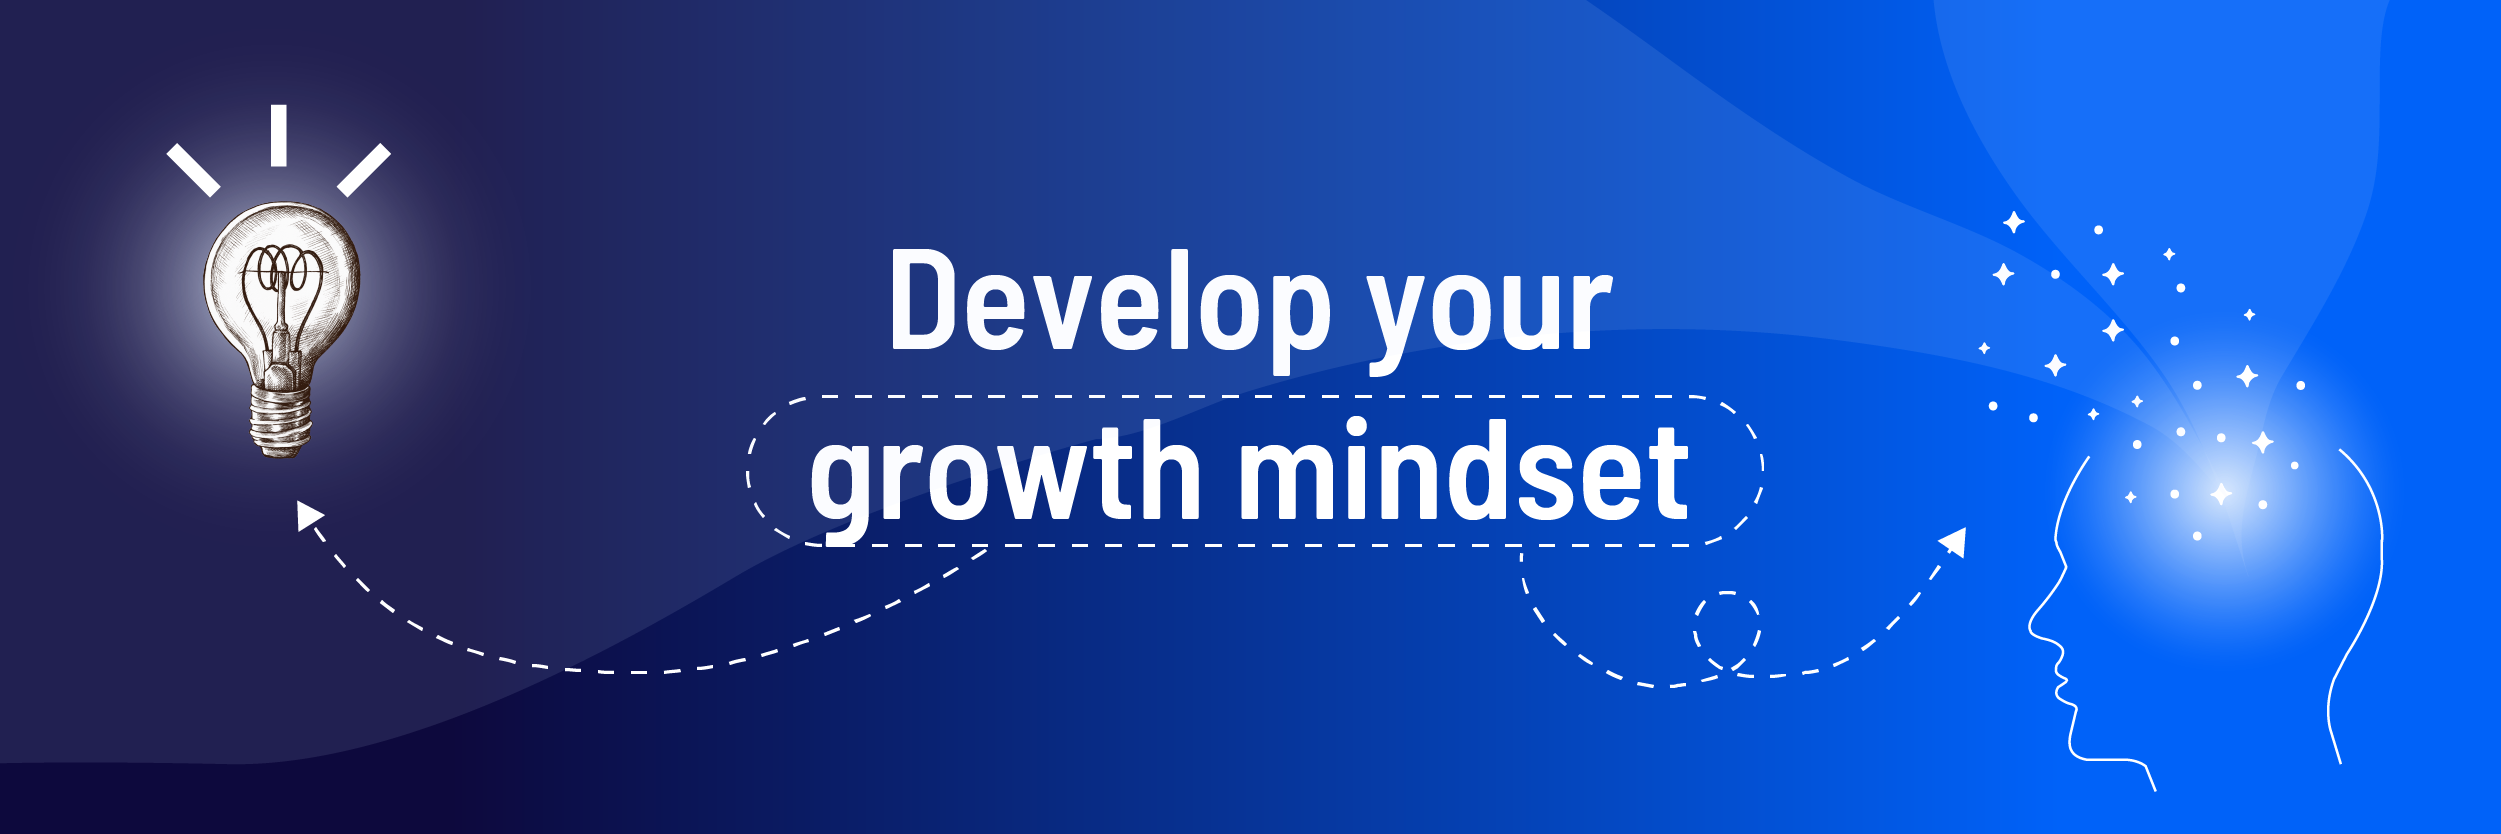 Develop a growth mindset